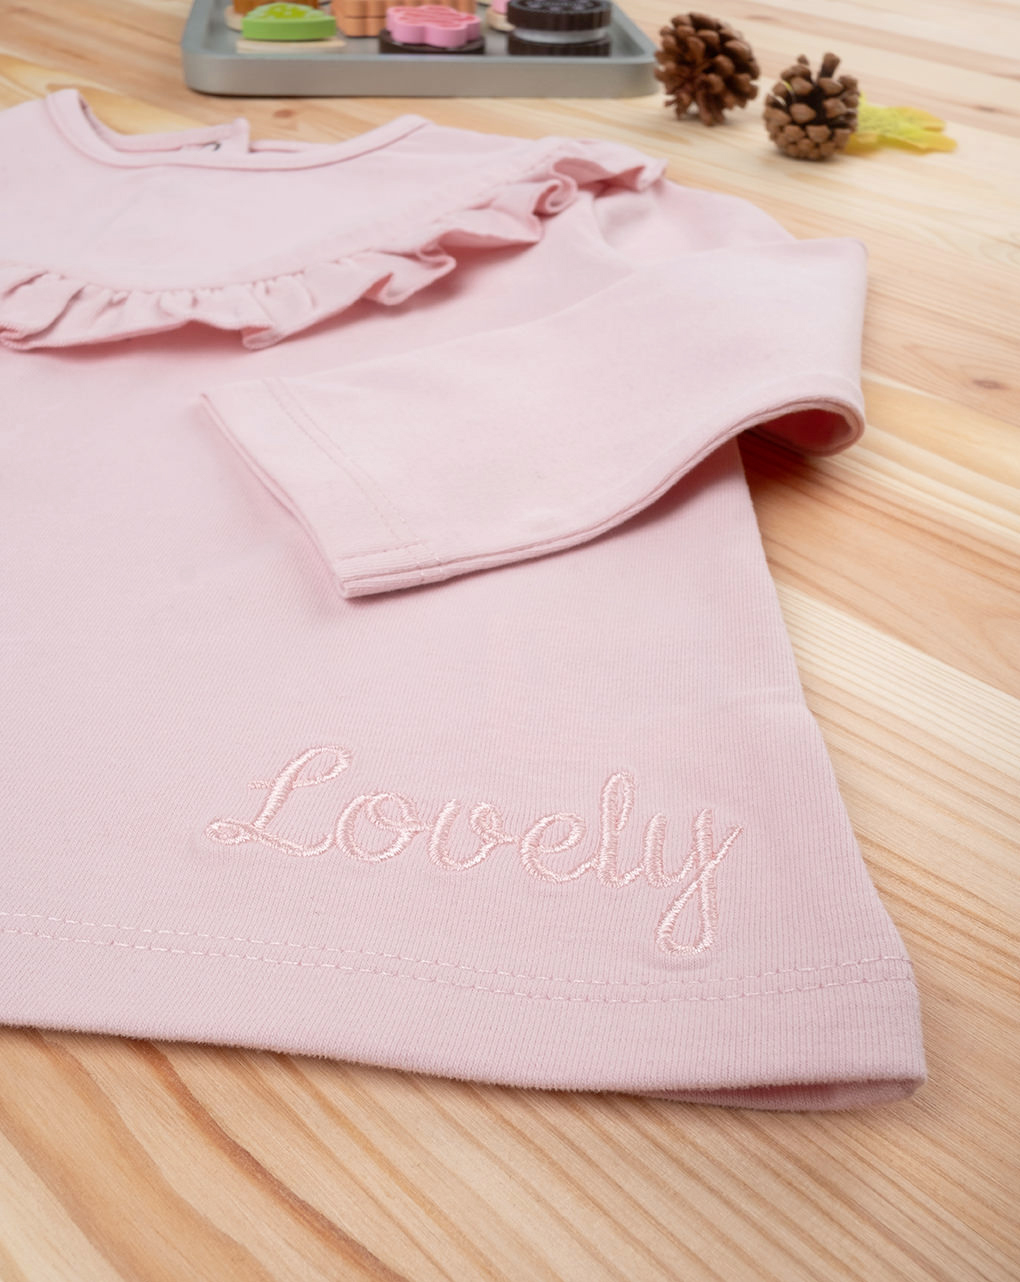 Jersey de manga larga niña rosa - Prénatal